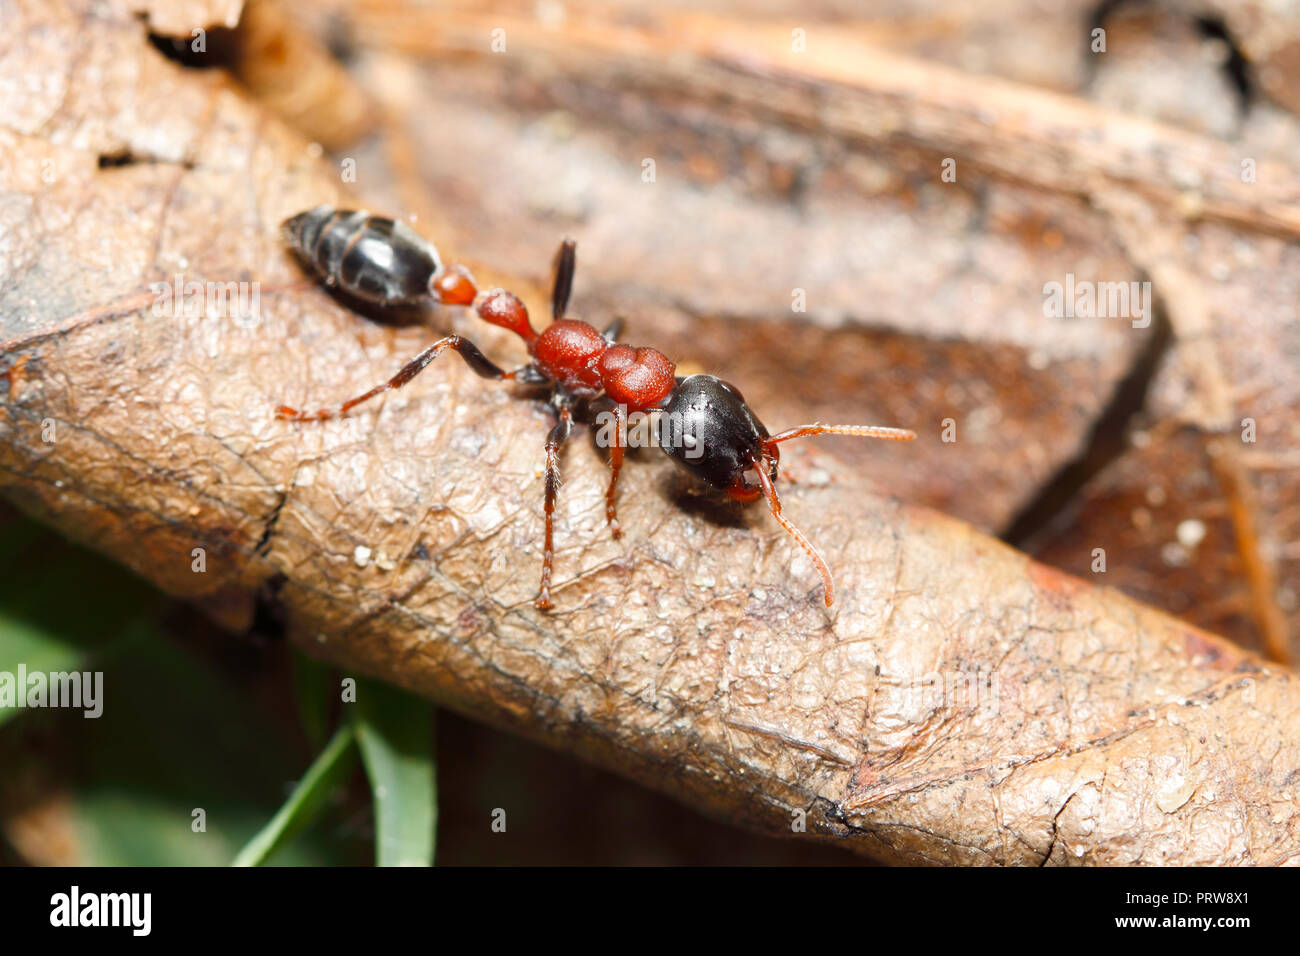 Bi-colore ant arboree (Tetraponera rufonigra) : ant che hanno una dolorosa puntura può causare reazioni allergiche e morto nell essere umano mediante shock anafilattico Foto Stock